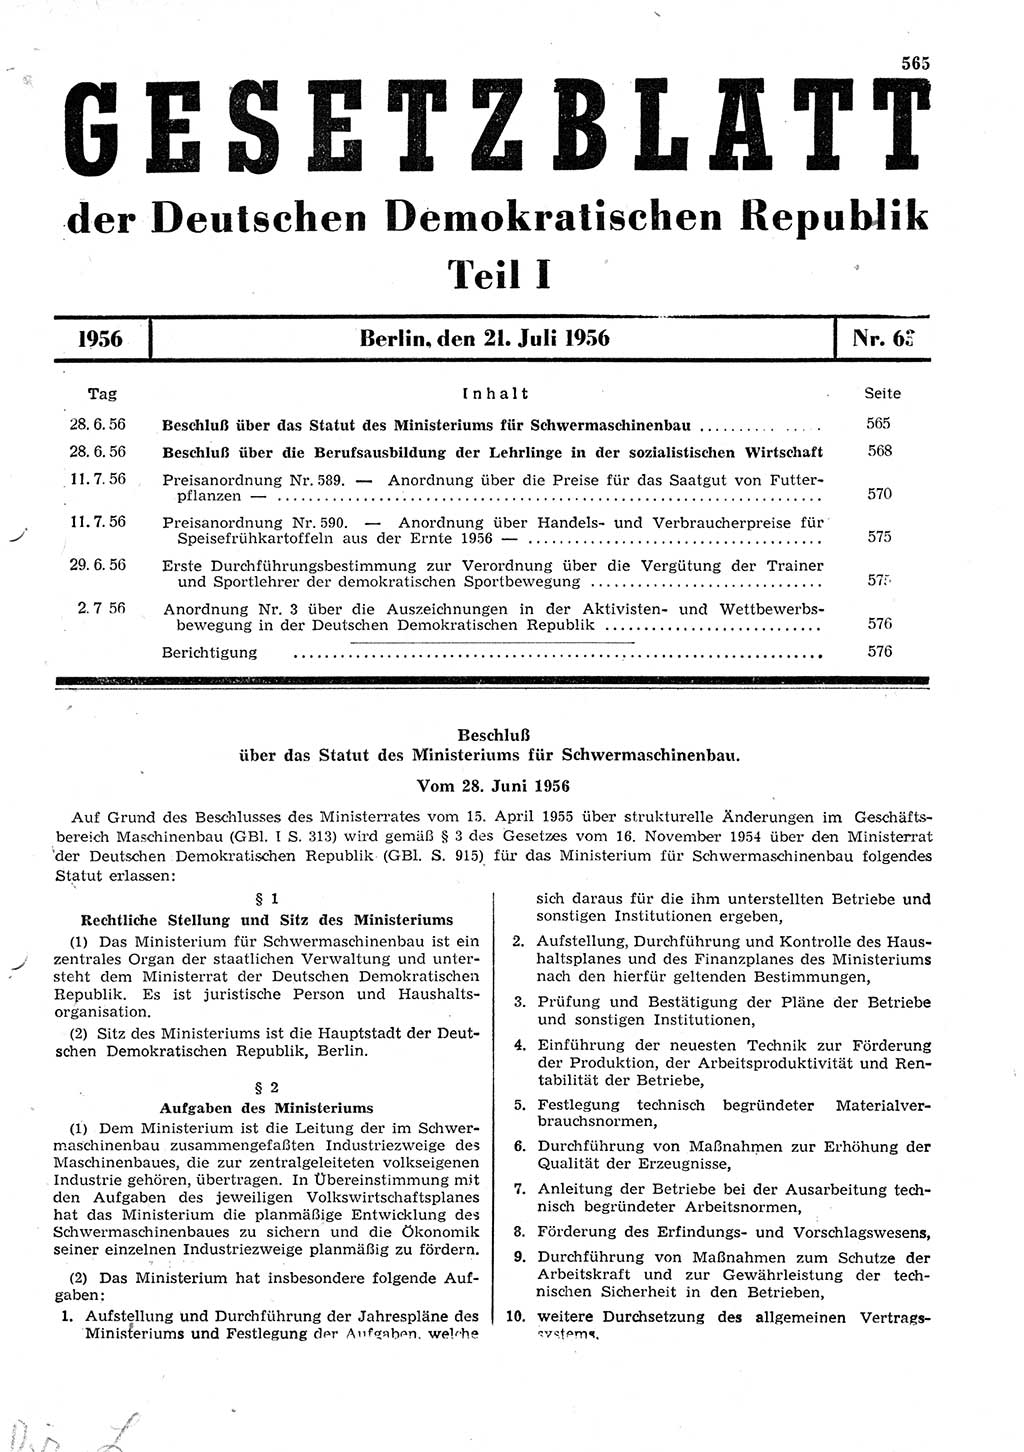 Gesetzblatt (GBl.) der Deutschen Demokratischen Republik (DDR) Teil Ⅰ 1956, Seite 565 (GBl. DDR Ⅰ 1956, S. 565)